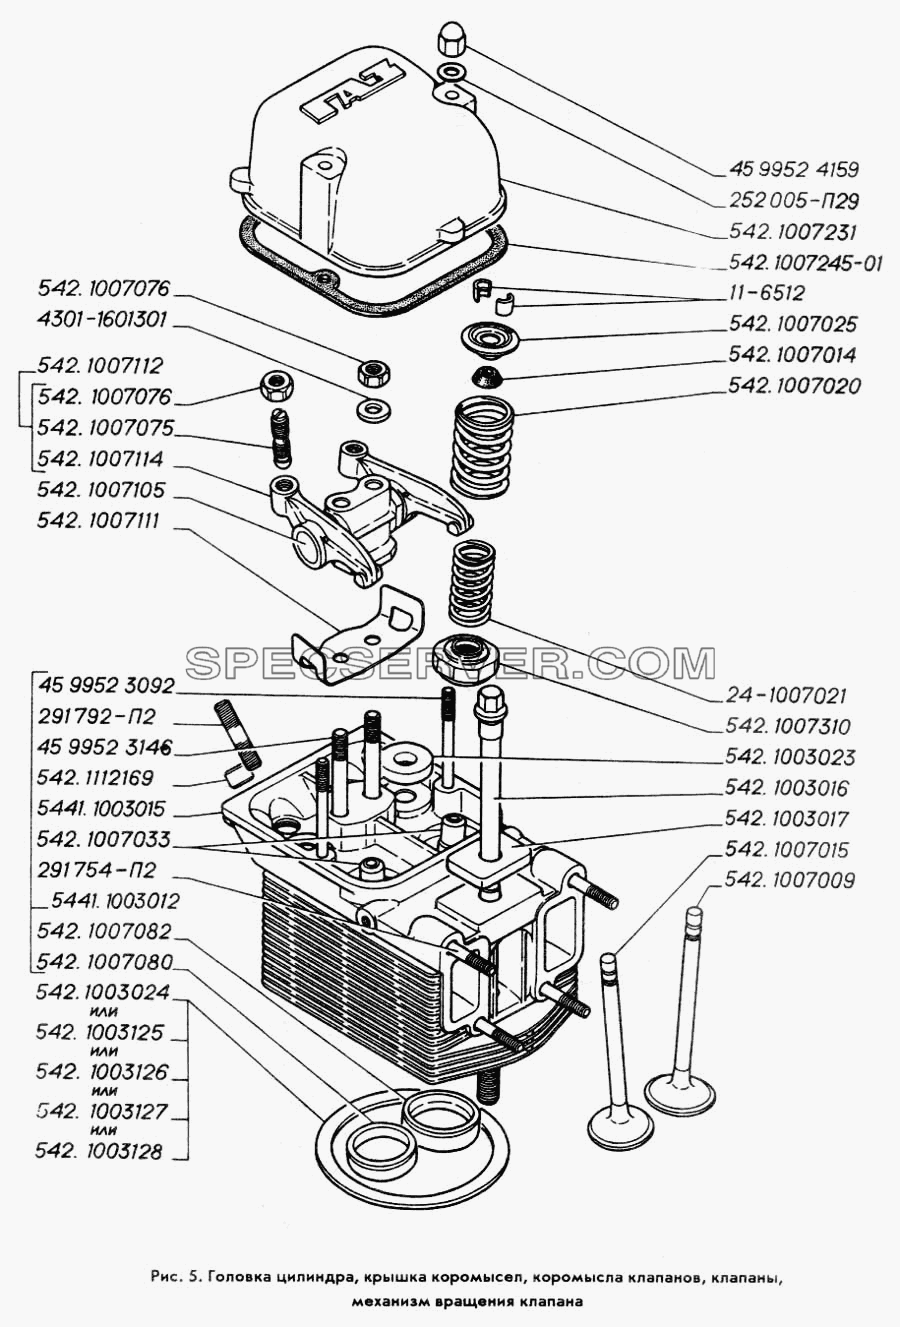 Головка цилиндра, крышка коромысел, коромысла клапанов, клапаны, механизм вращения клапана для ГАЗ-3309 (список запасных частей)